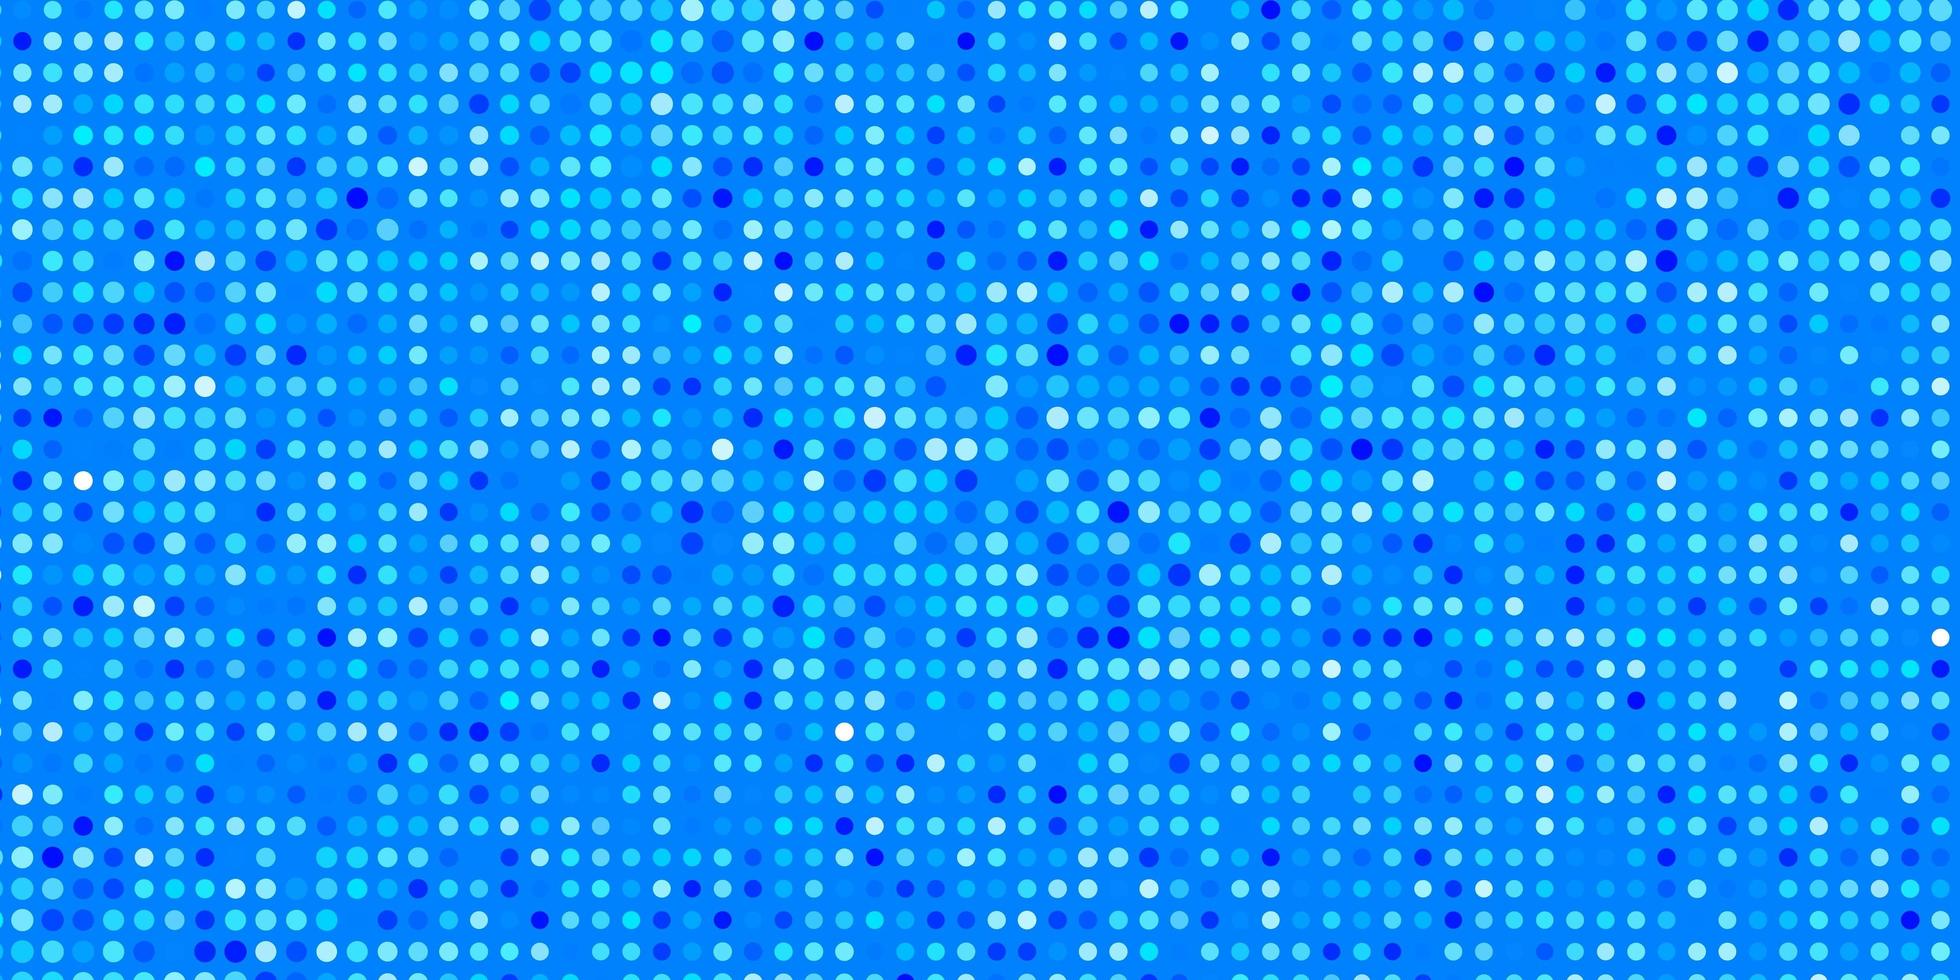 texture de vecteur bleu clair avec des cercles